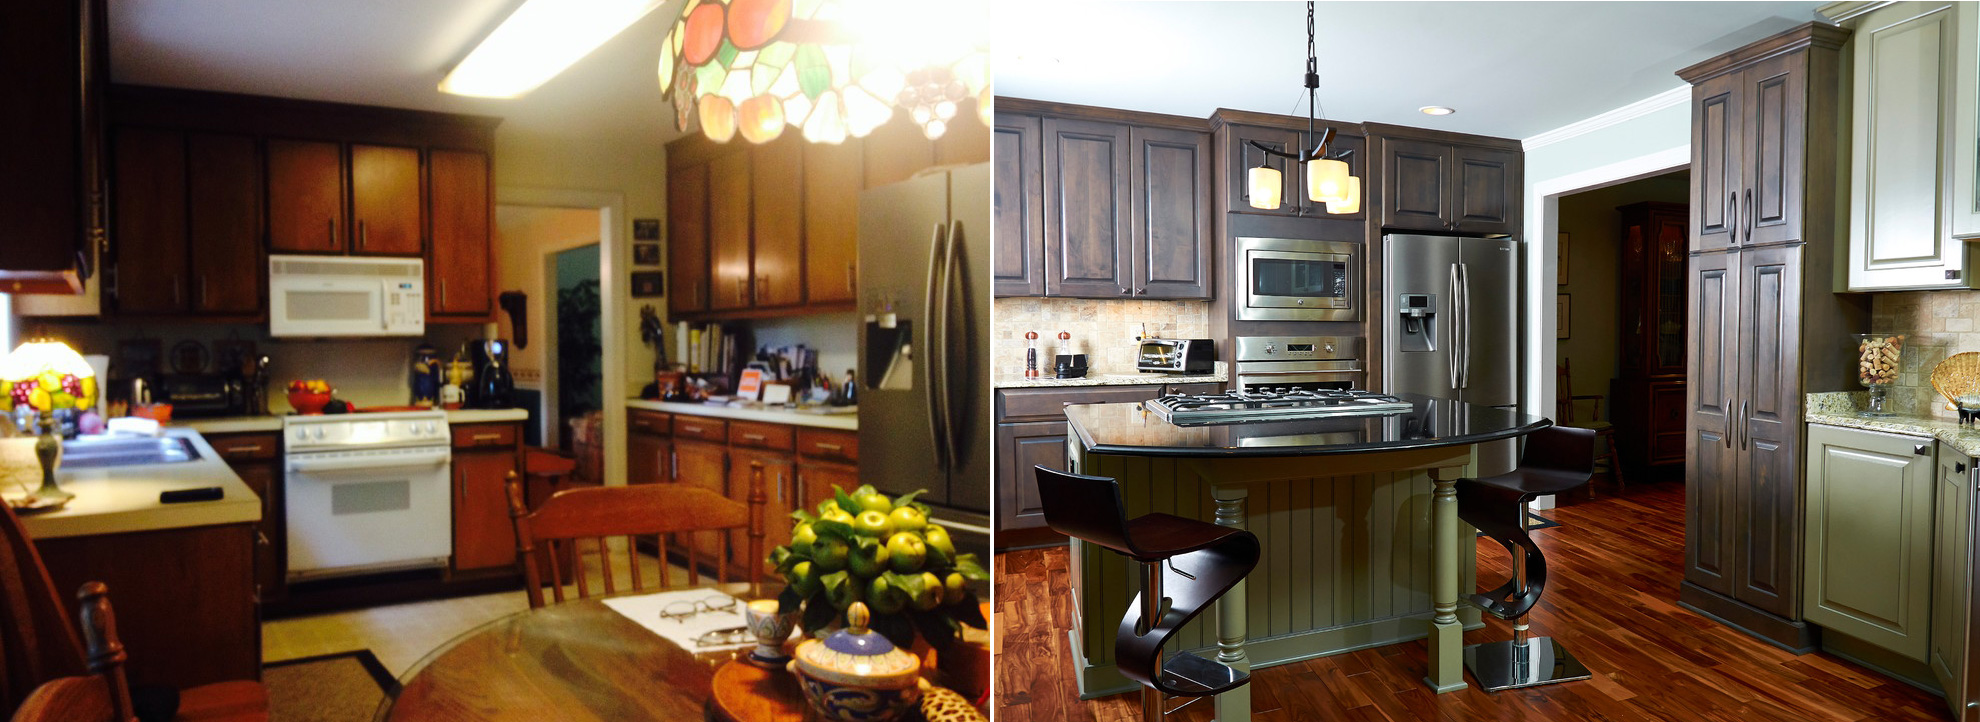 Кухня с большими окнами. Фото до и после